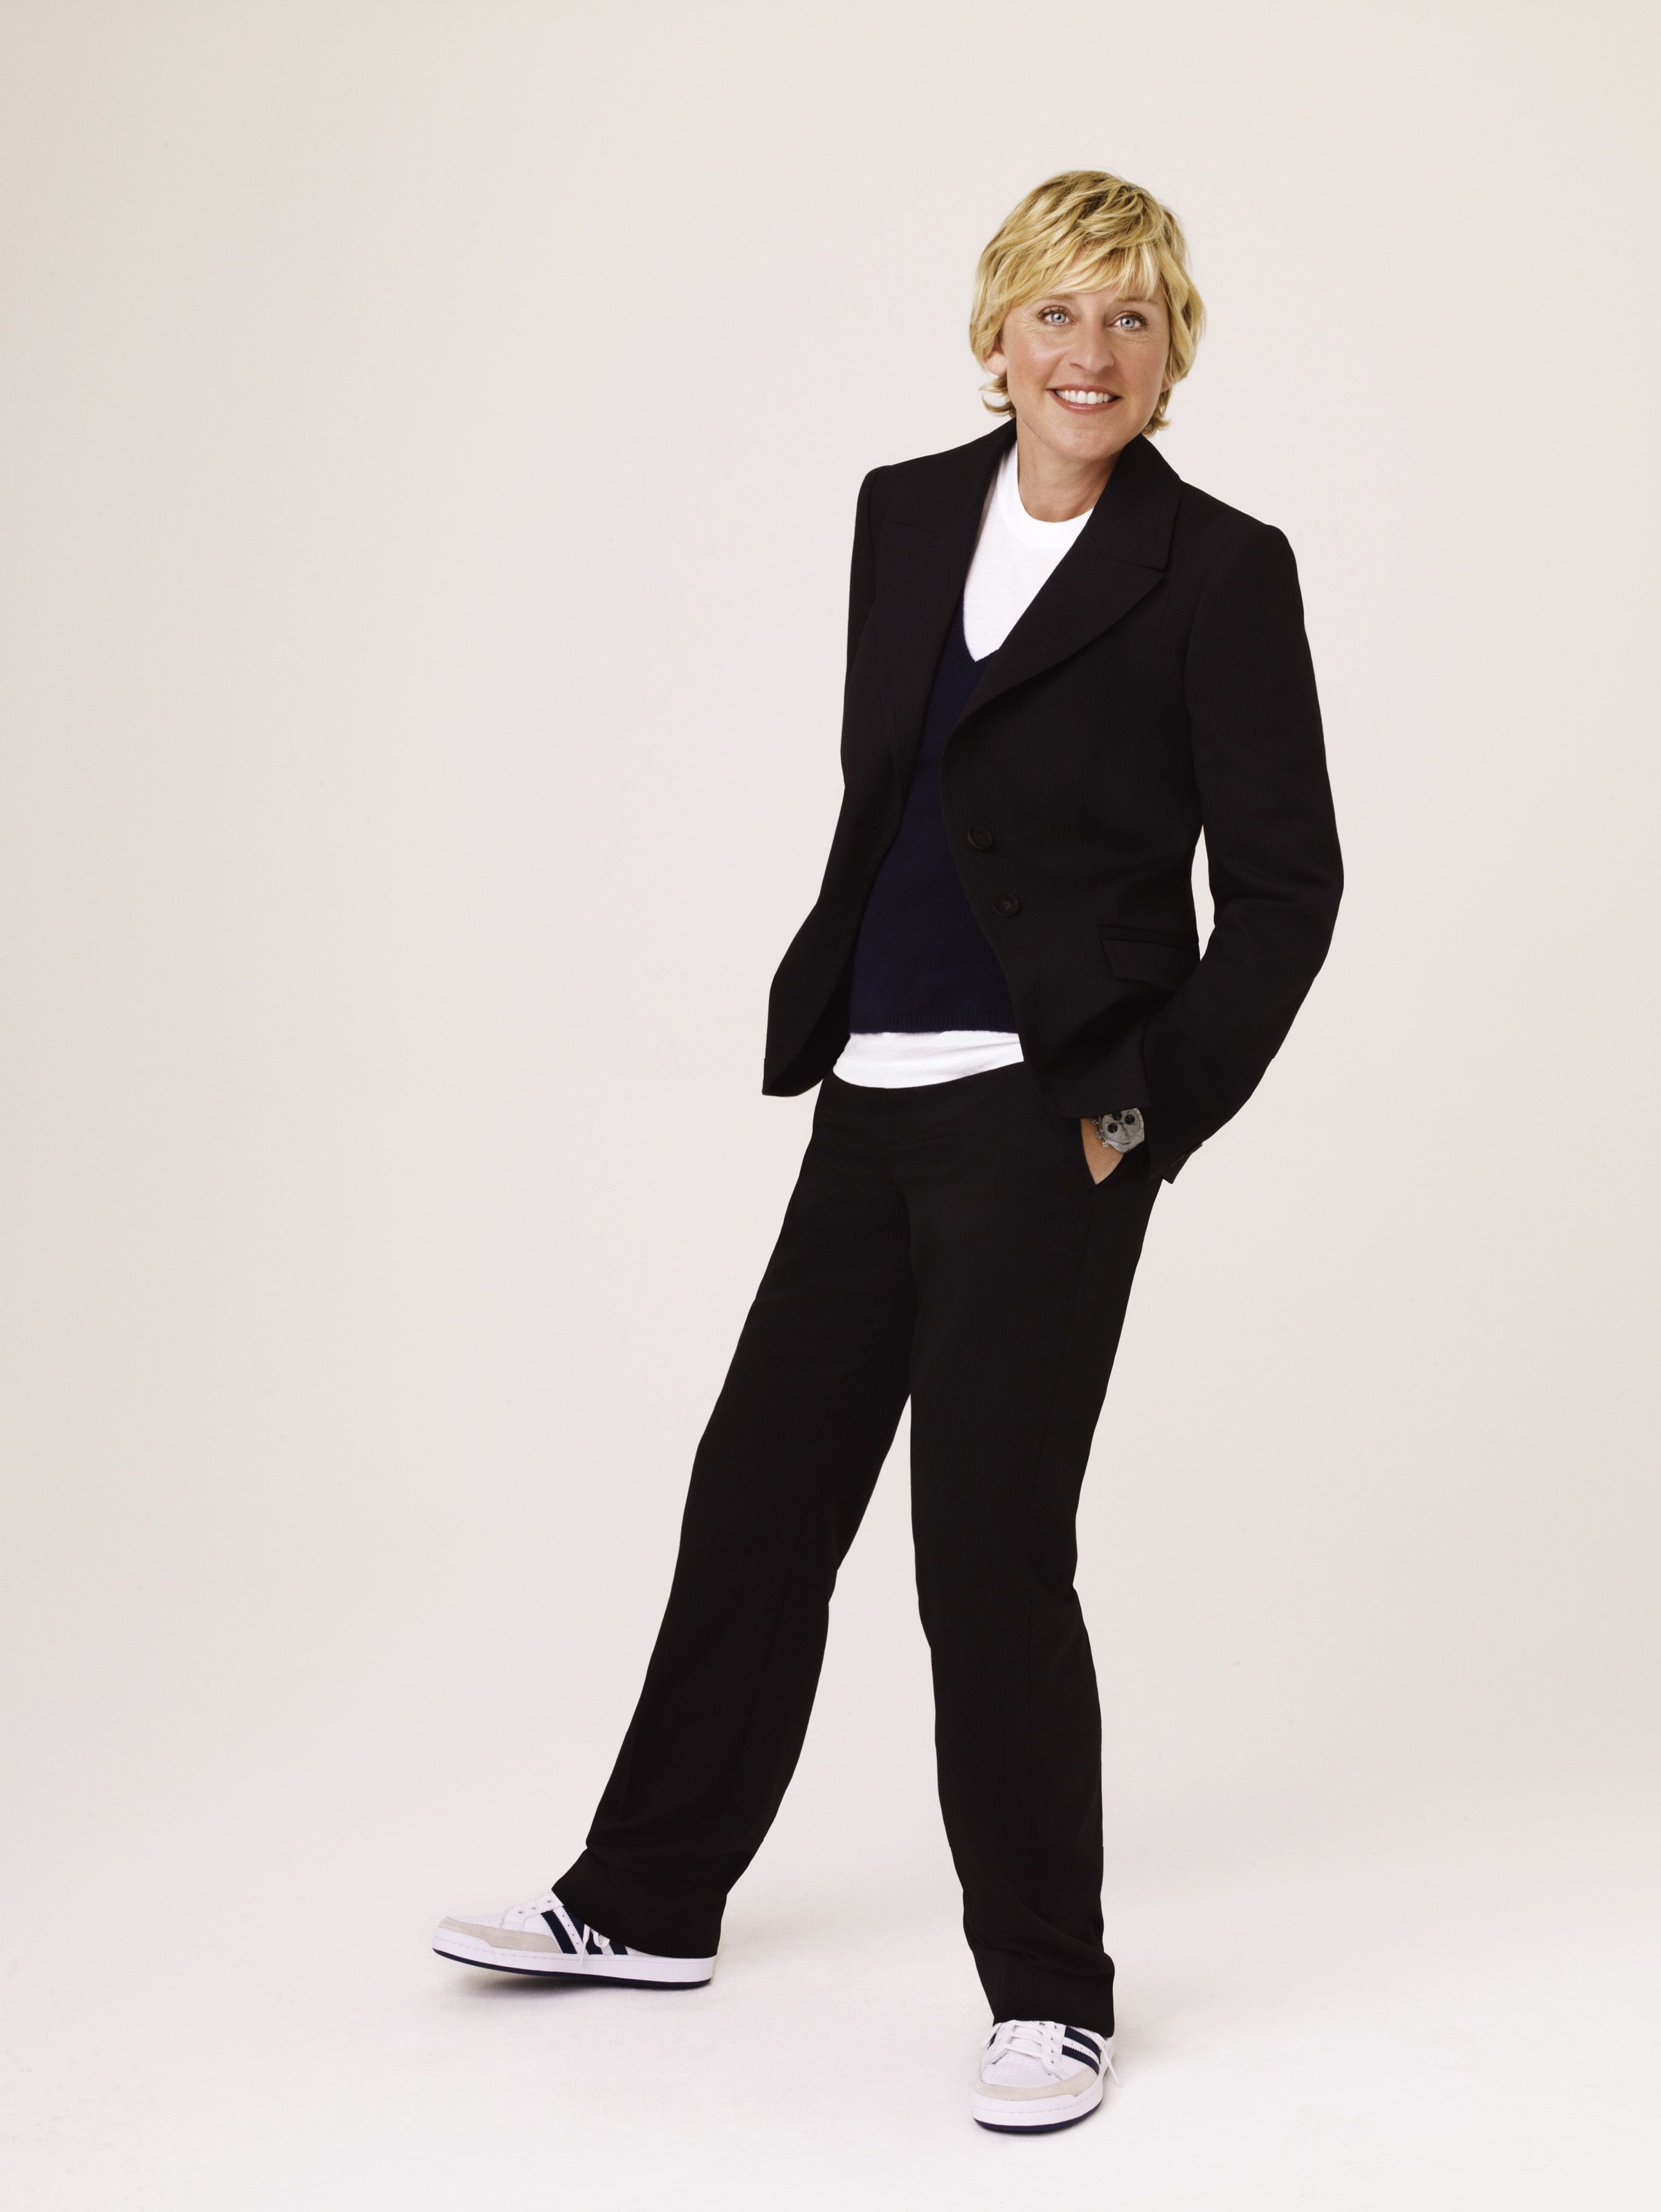 Ellen-DeGeneres-HD-Wallpapers-4.jpg